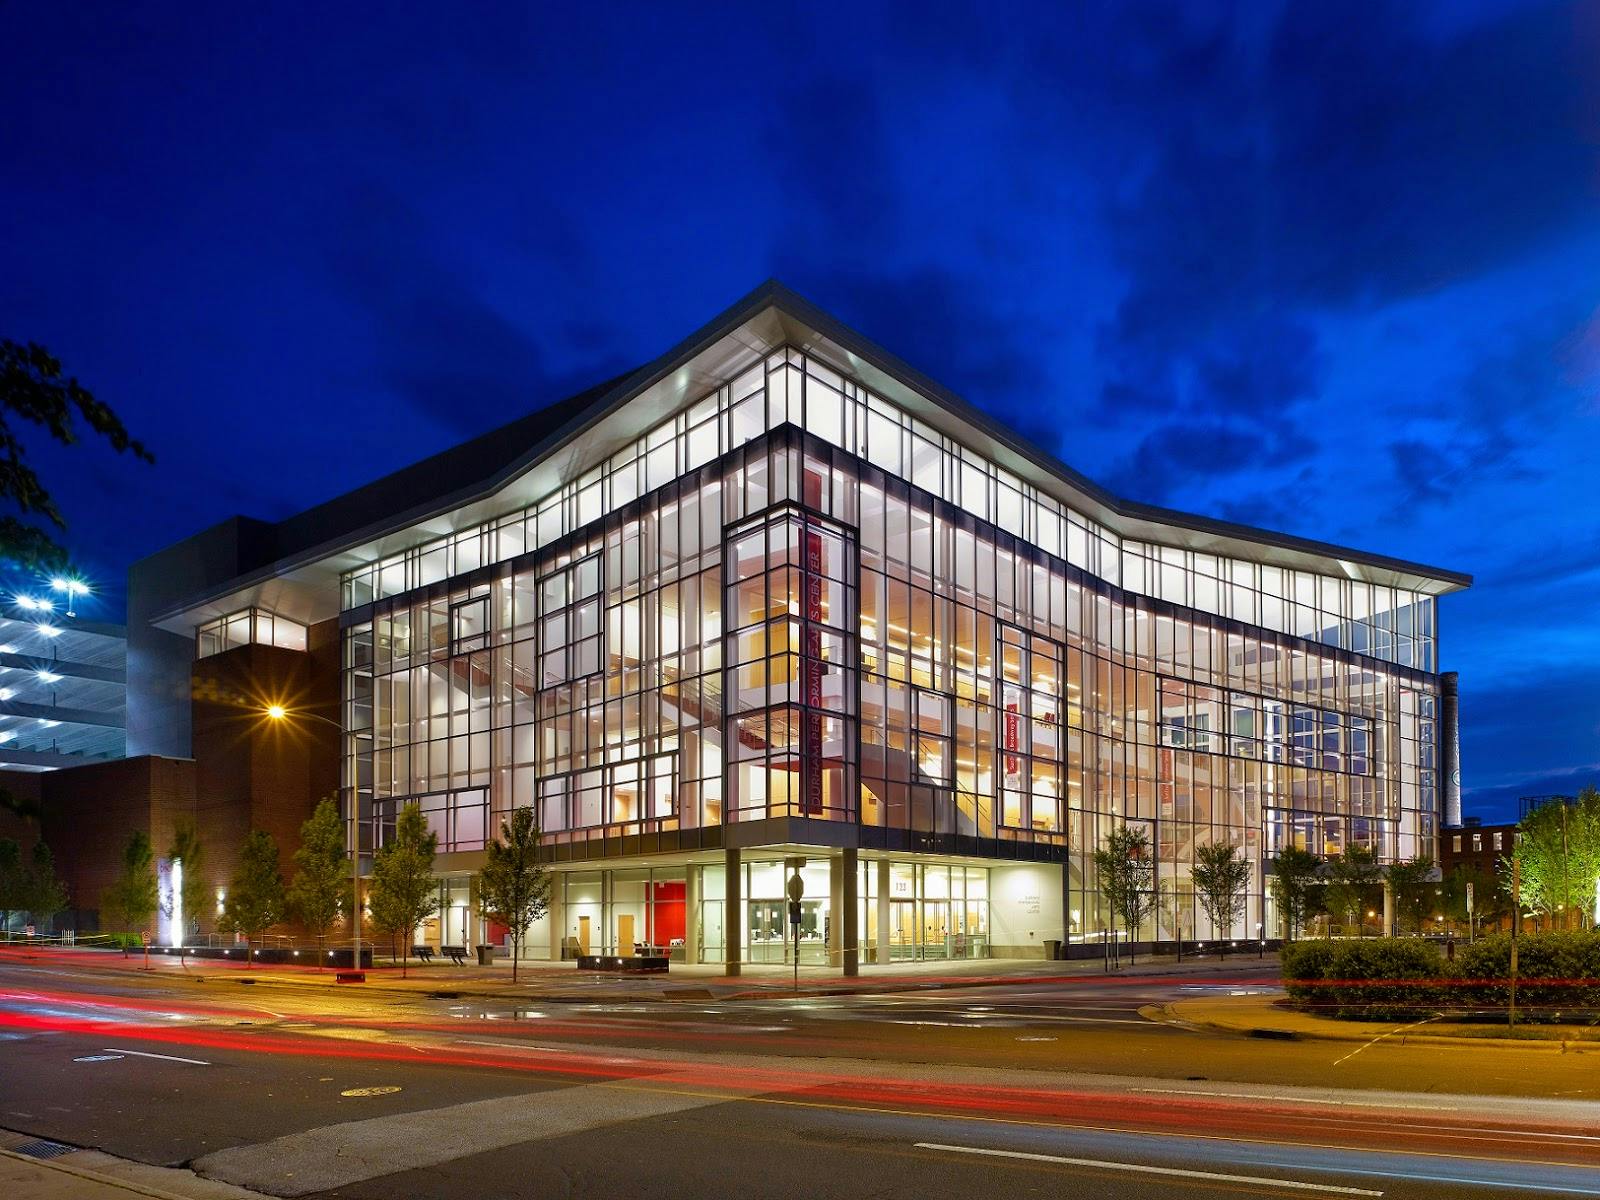 Image - Durham Performing Arts Center